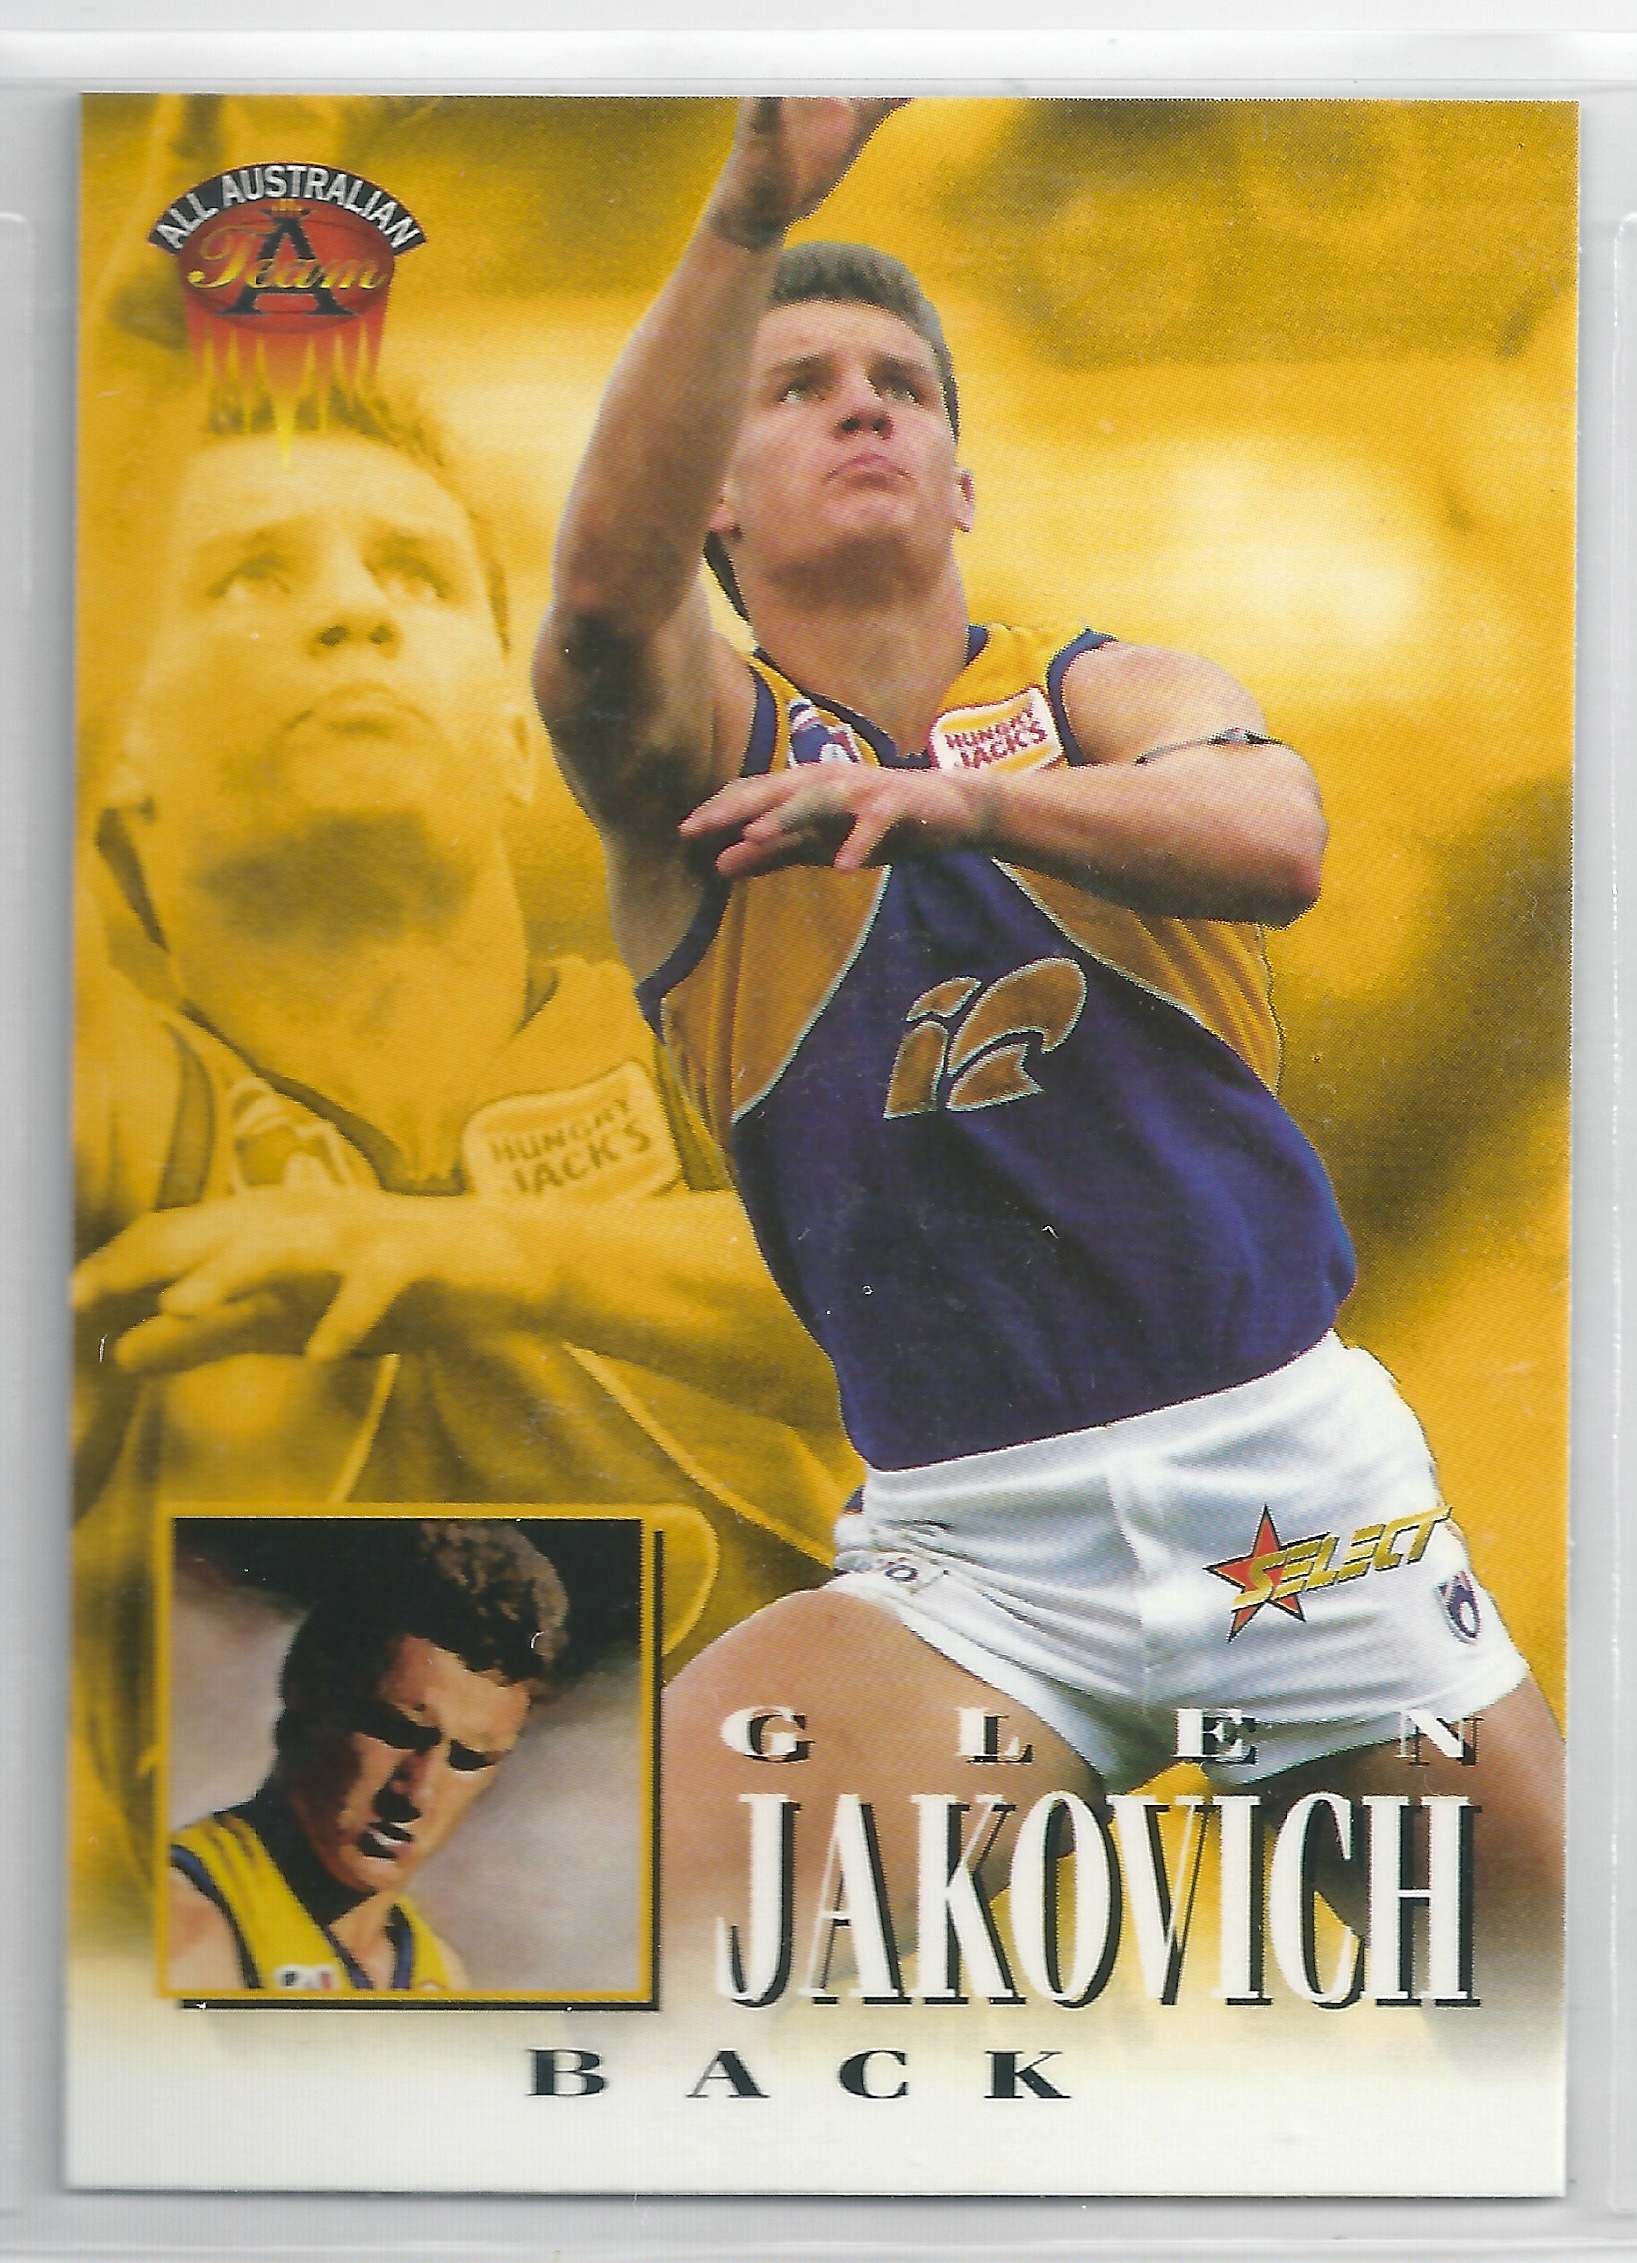 1996 Select All Australian (232) Glen Jakovich West Coast